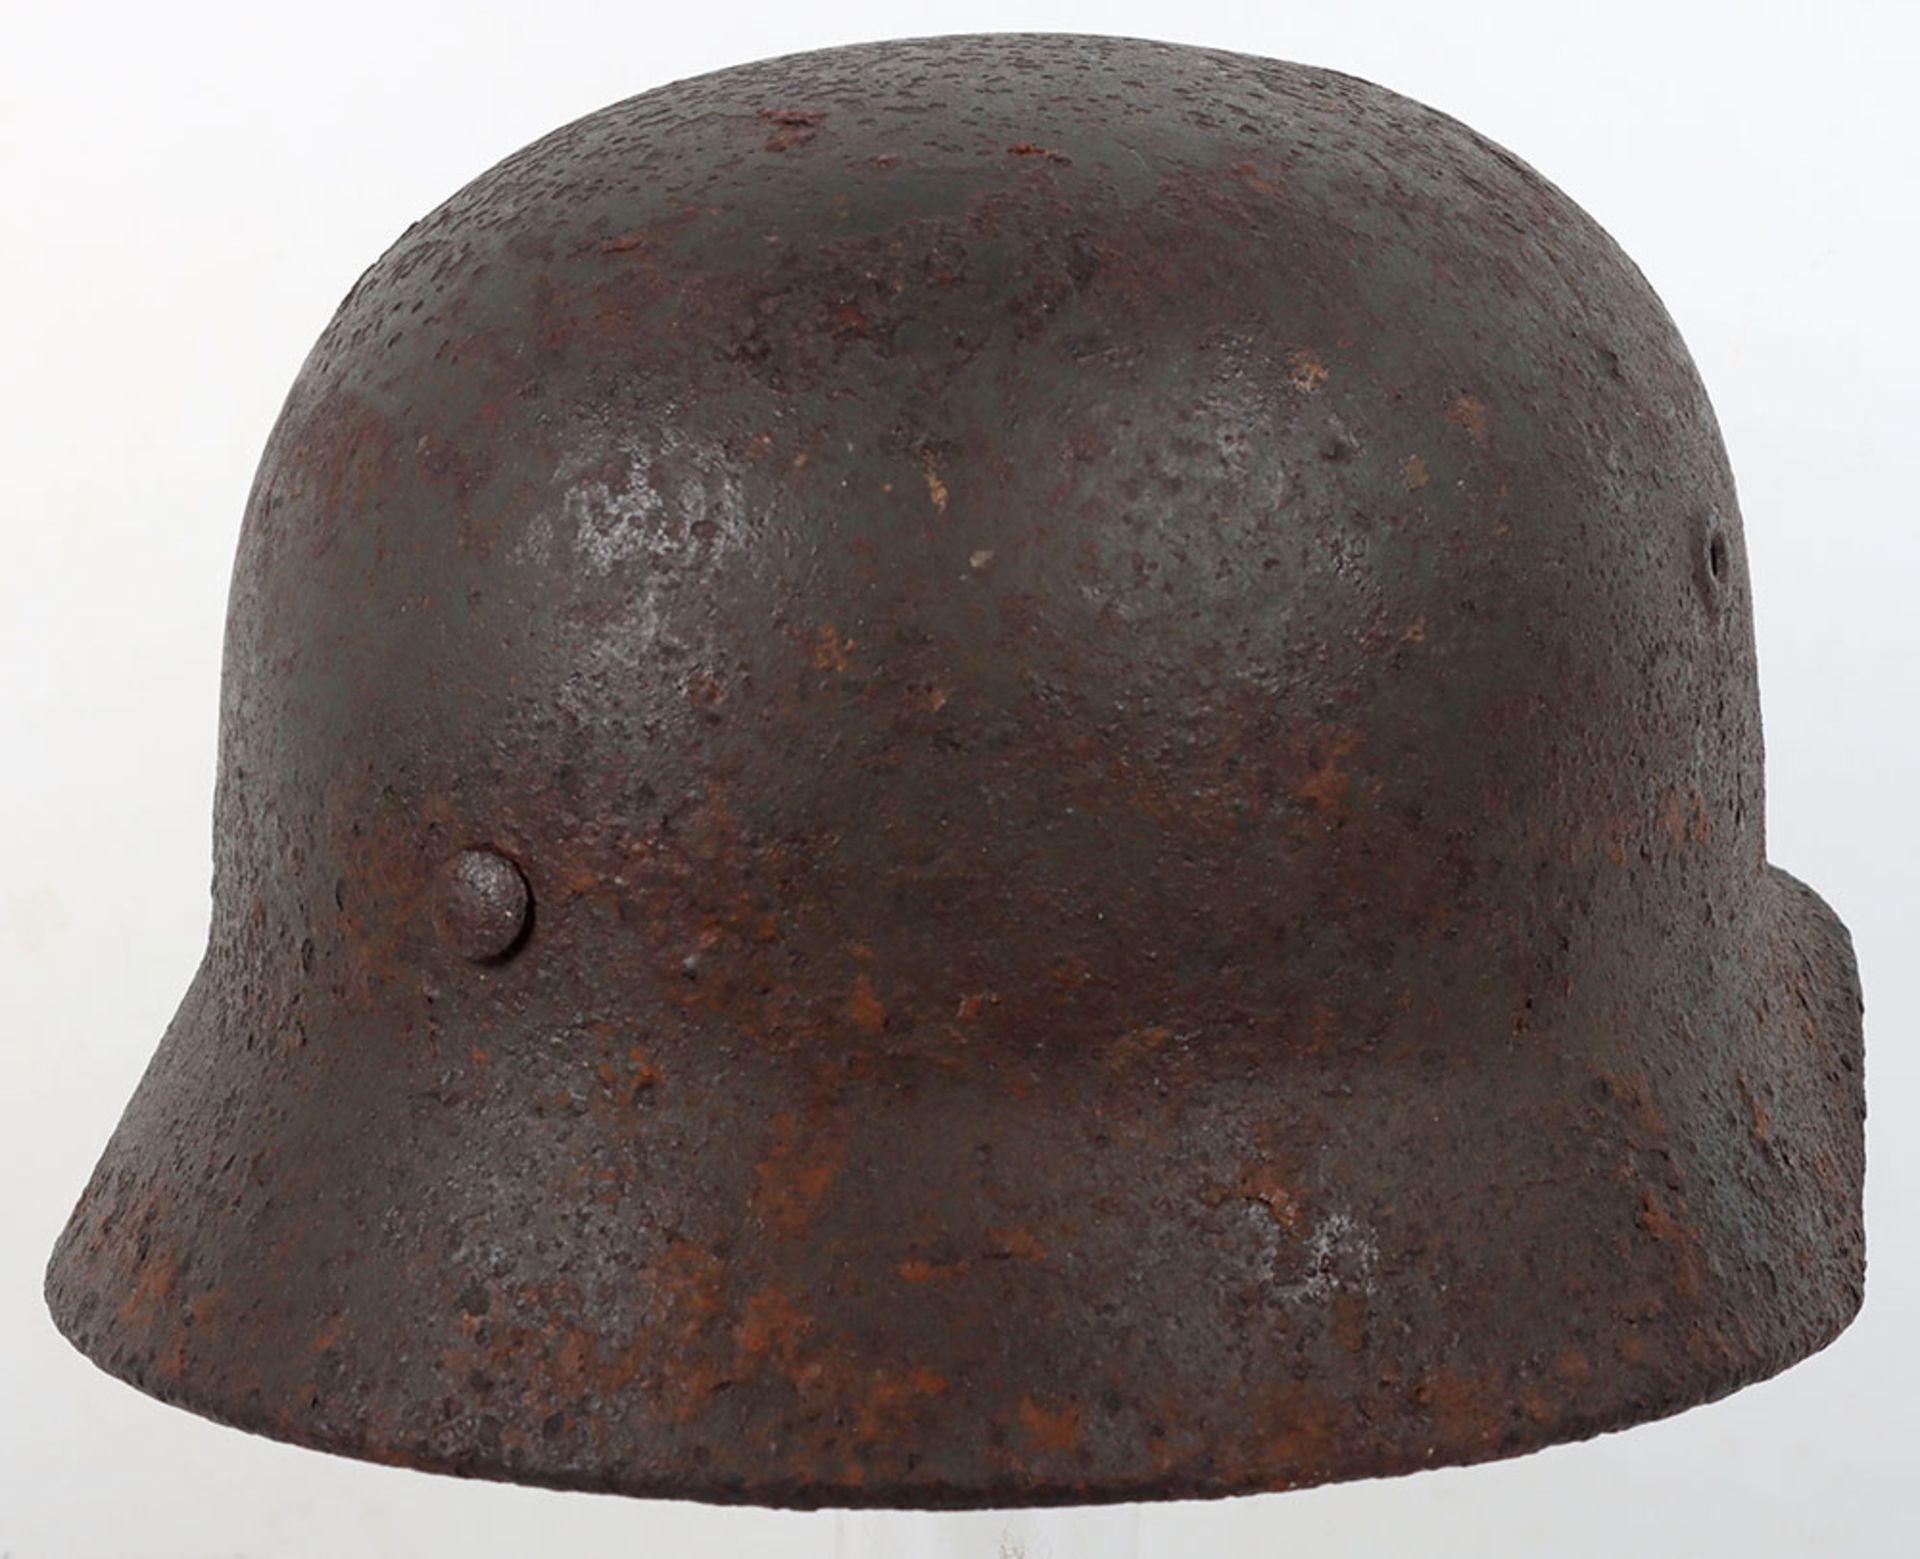 WW2 German Army M40 Single Decal Helmet - Image 2 of 4